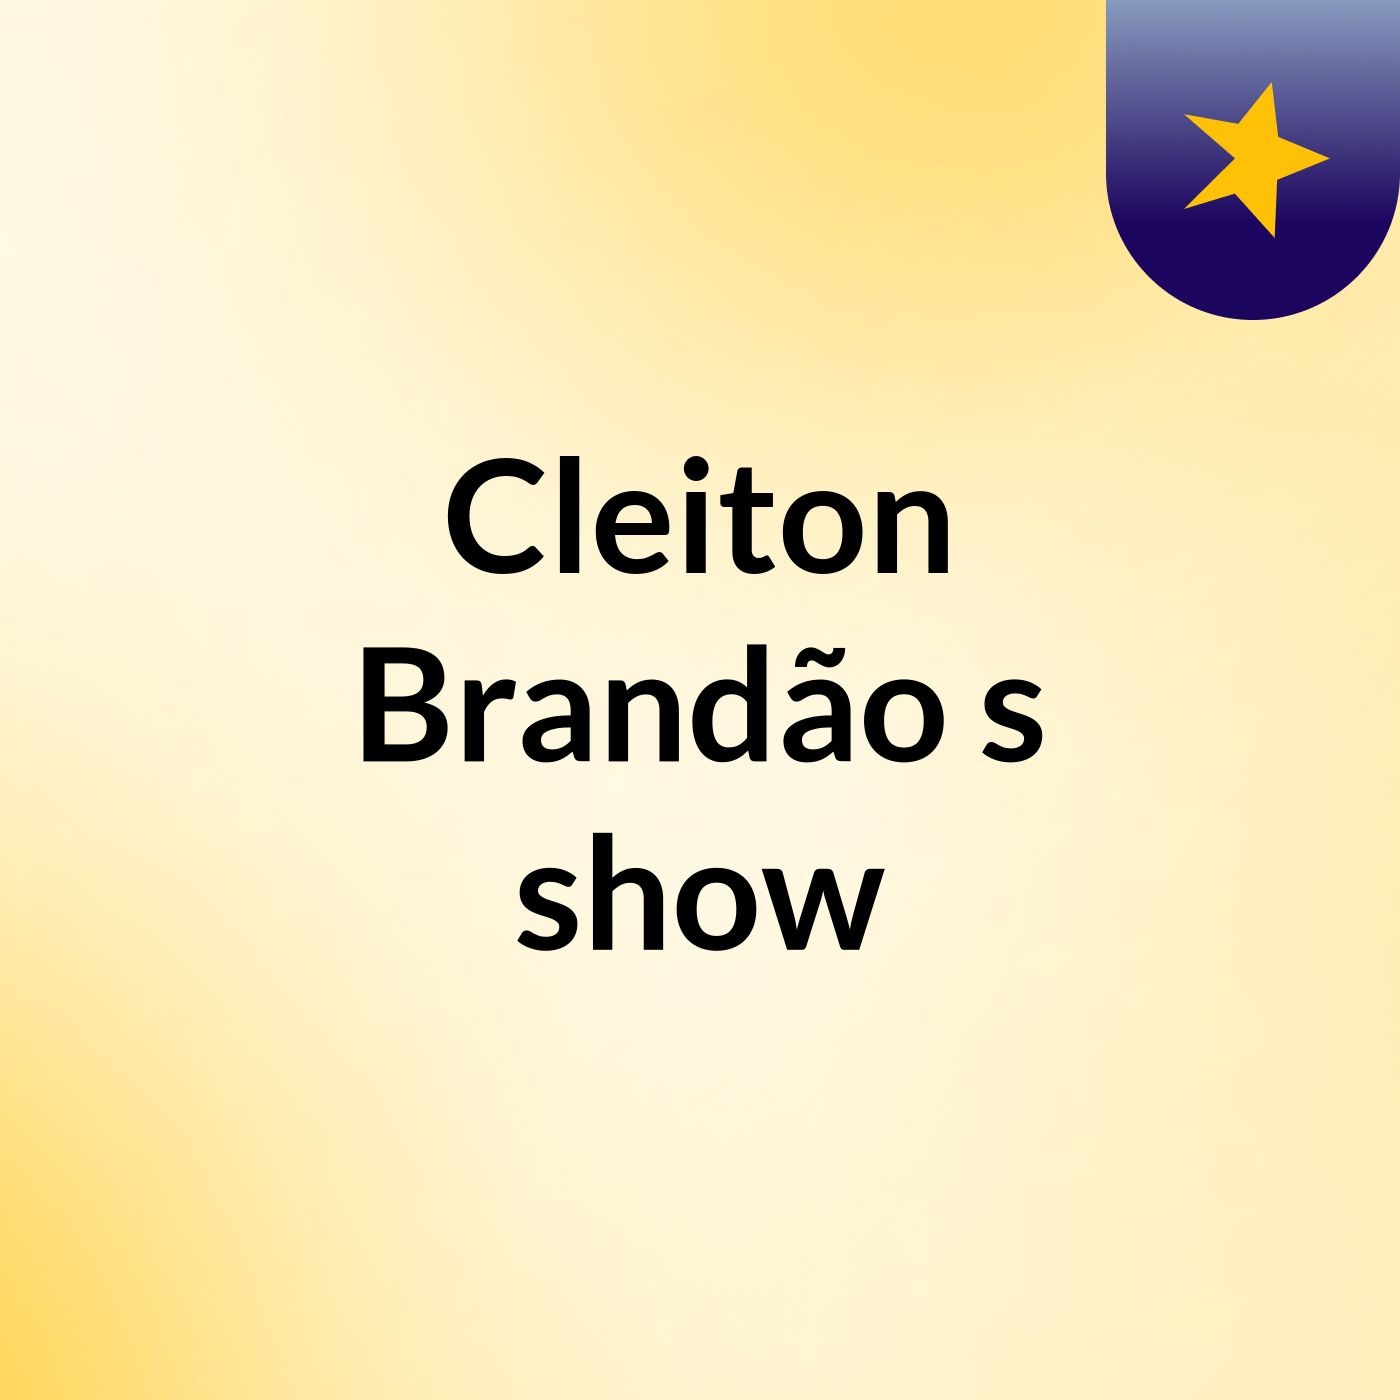 Cleiton Brandão's show